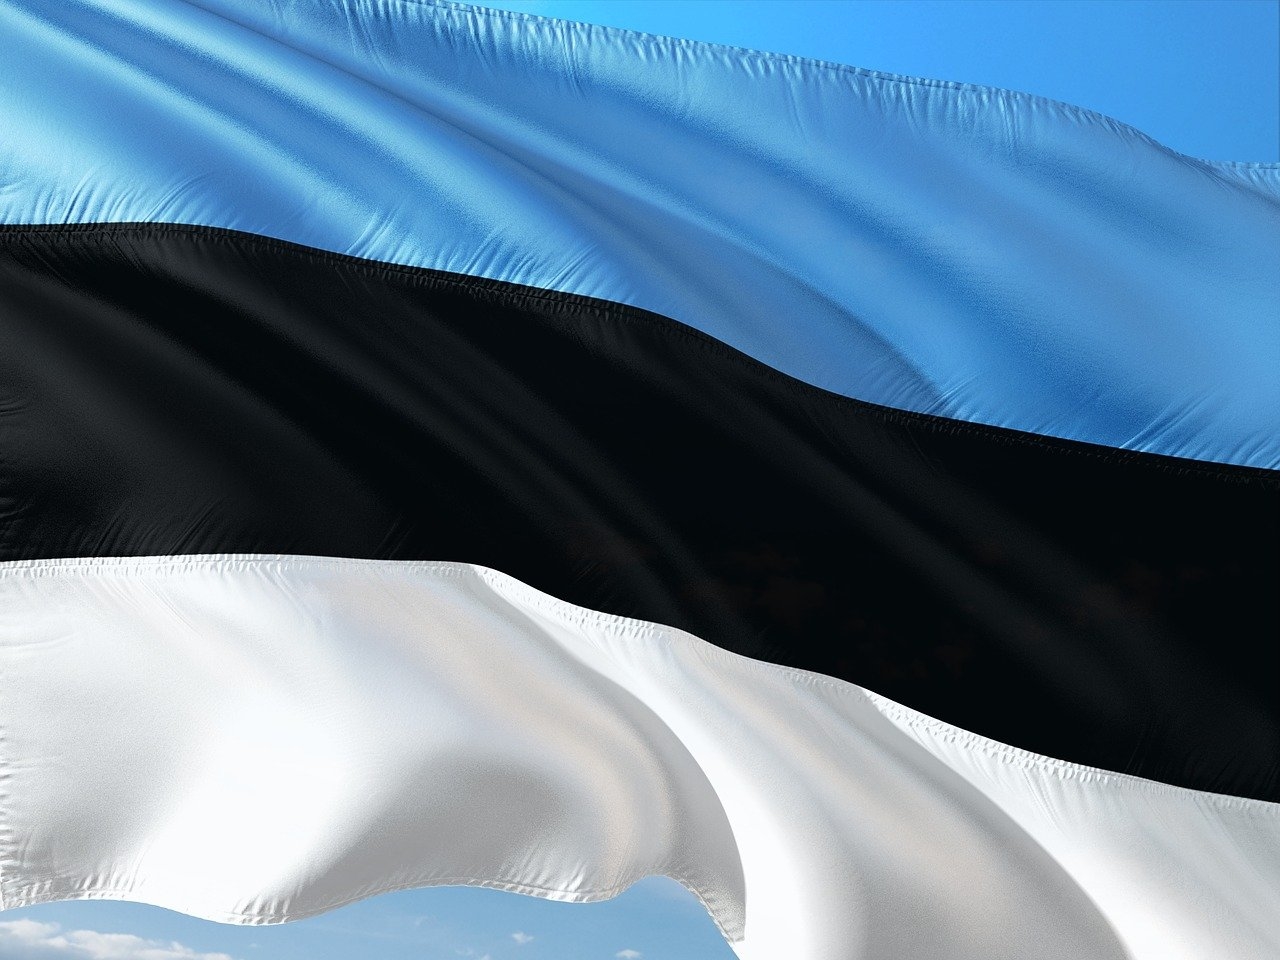 флаг эстонии фото